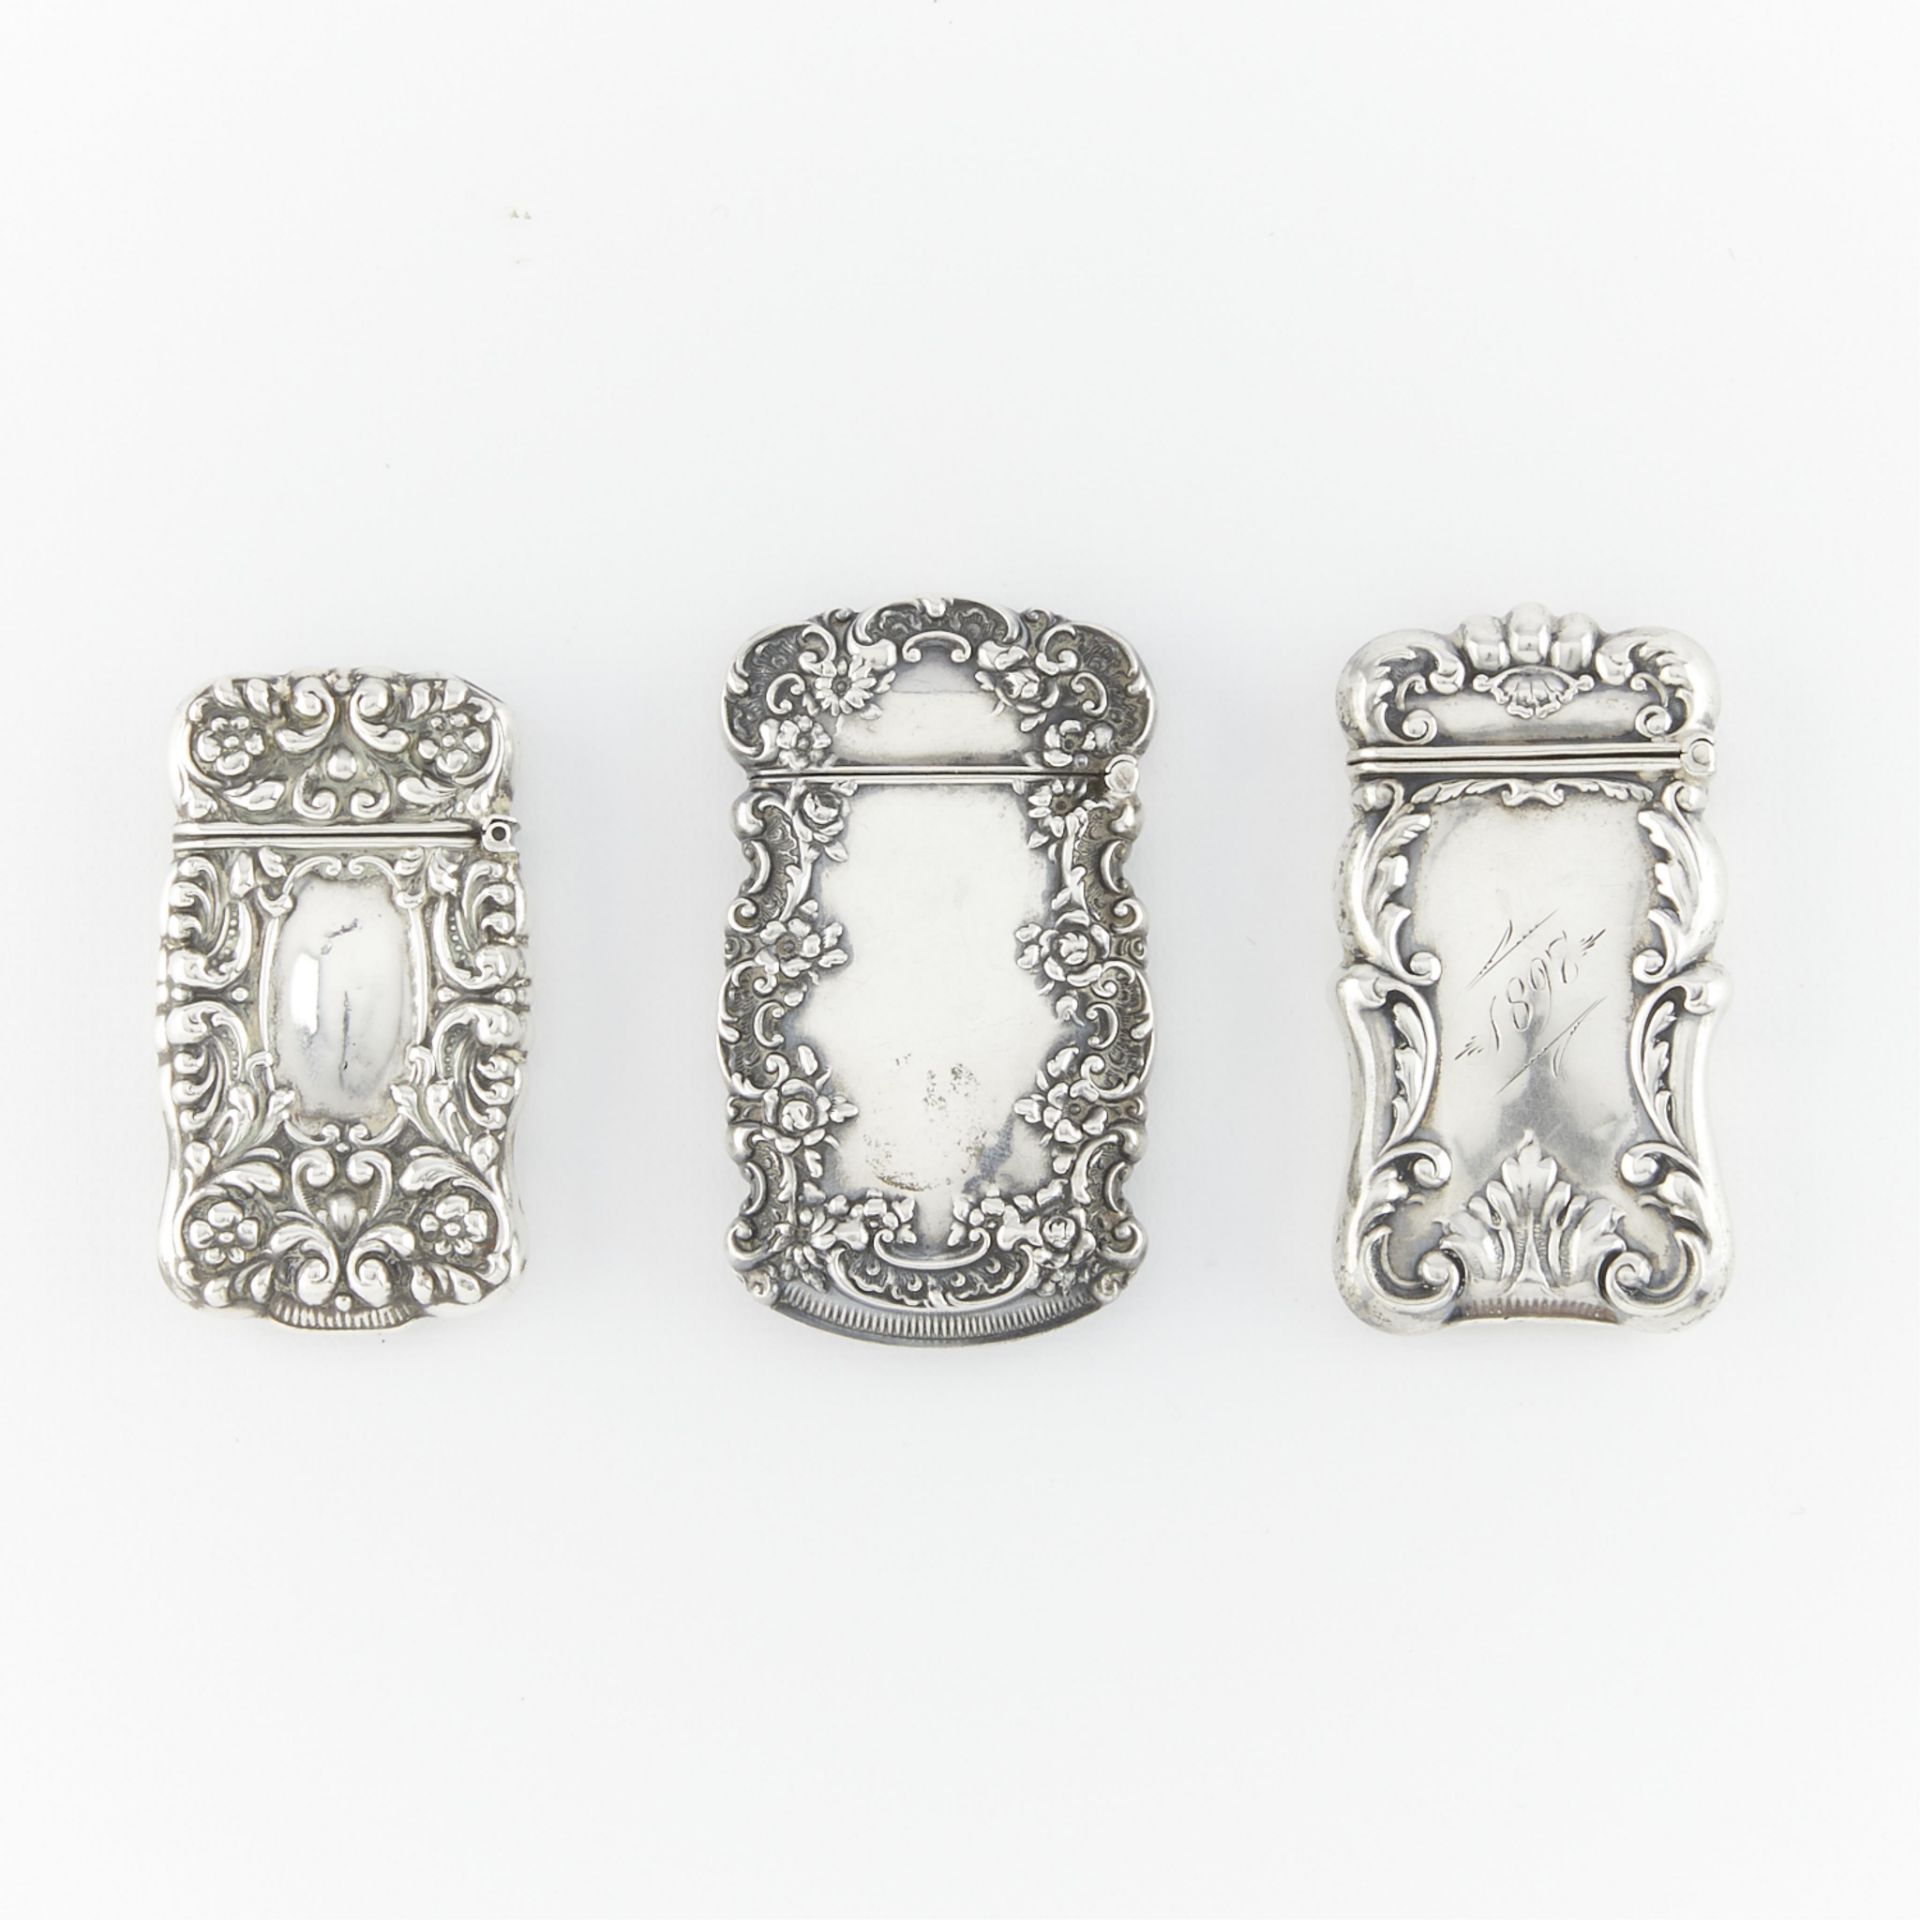 3 Sterling Silver Vesta Cases 1.81 ozt - Image 4 of 9